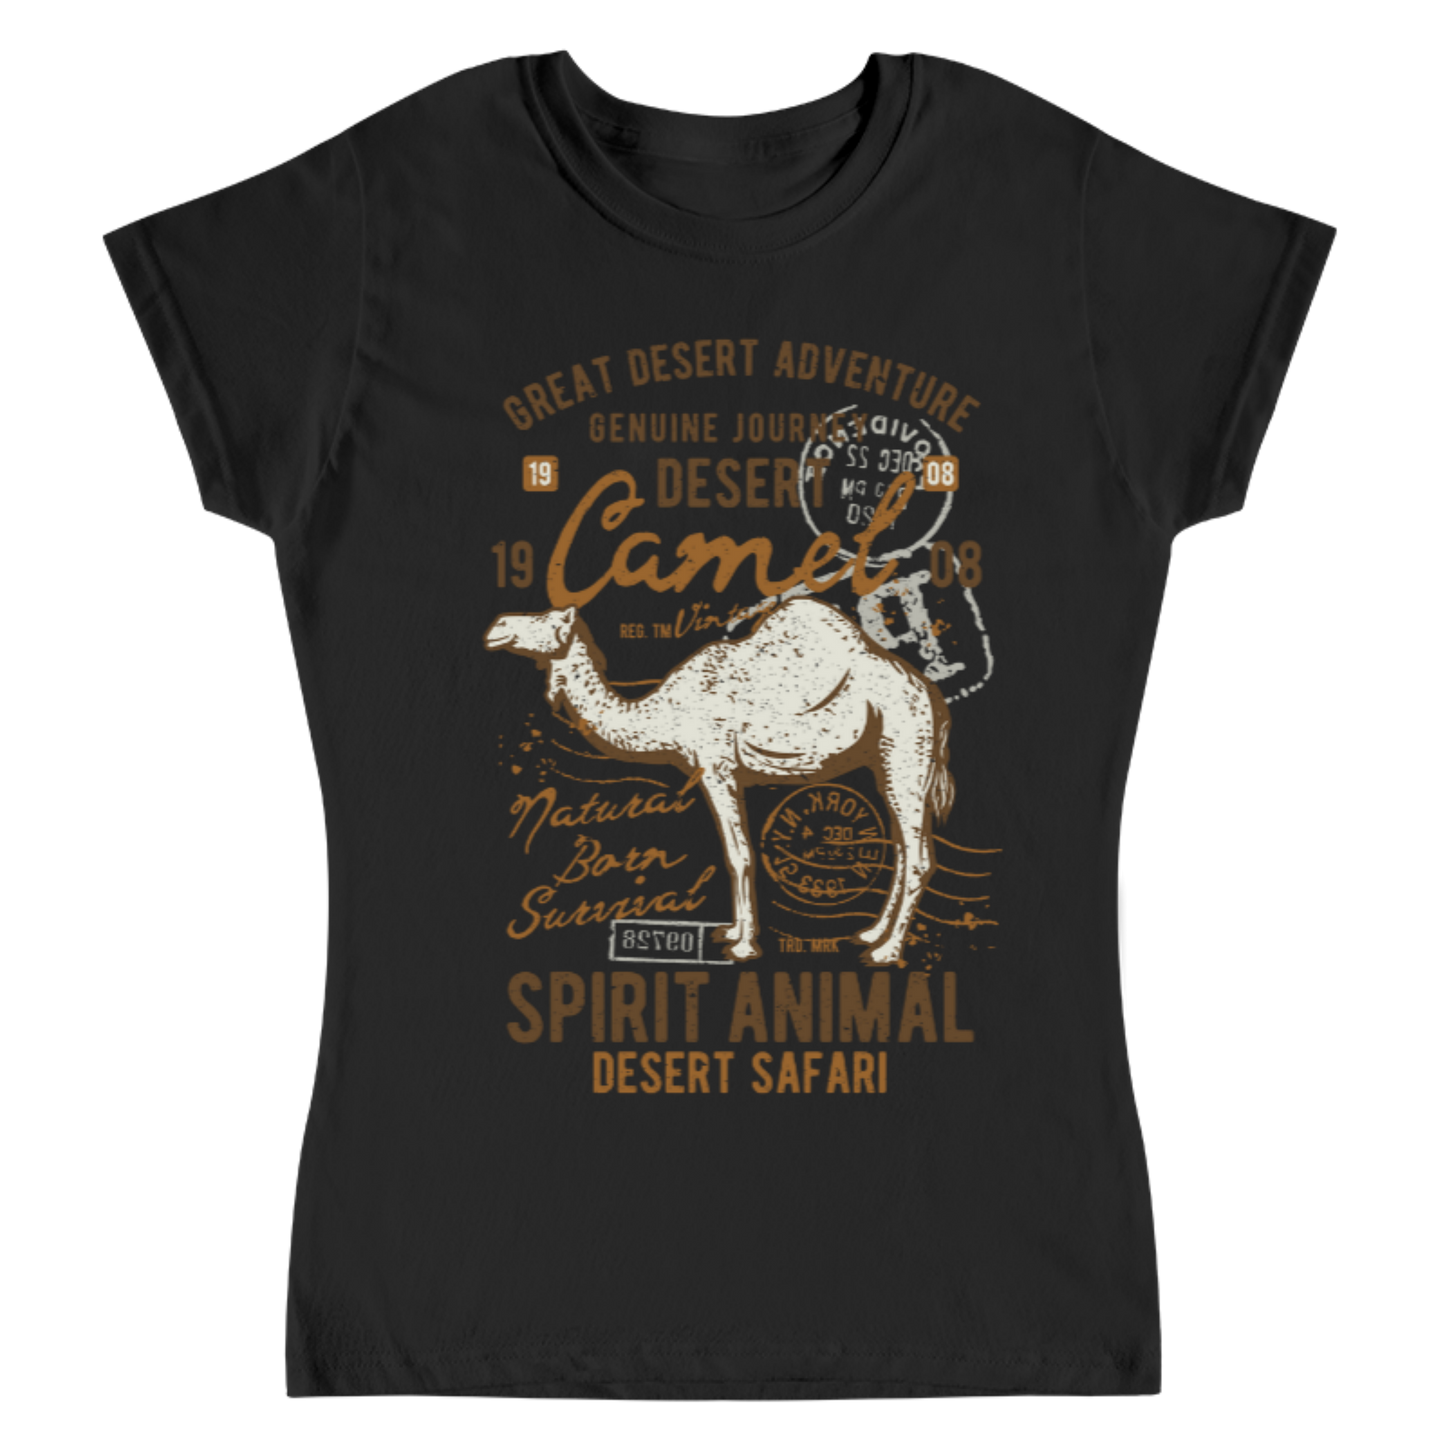 Playera Vintage Desert Camel - Mujer